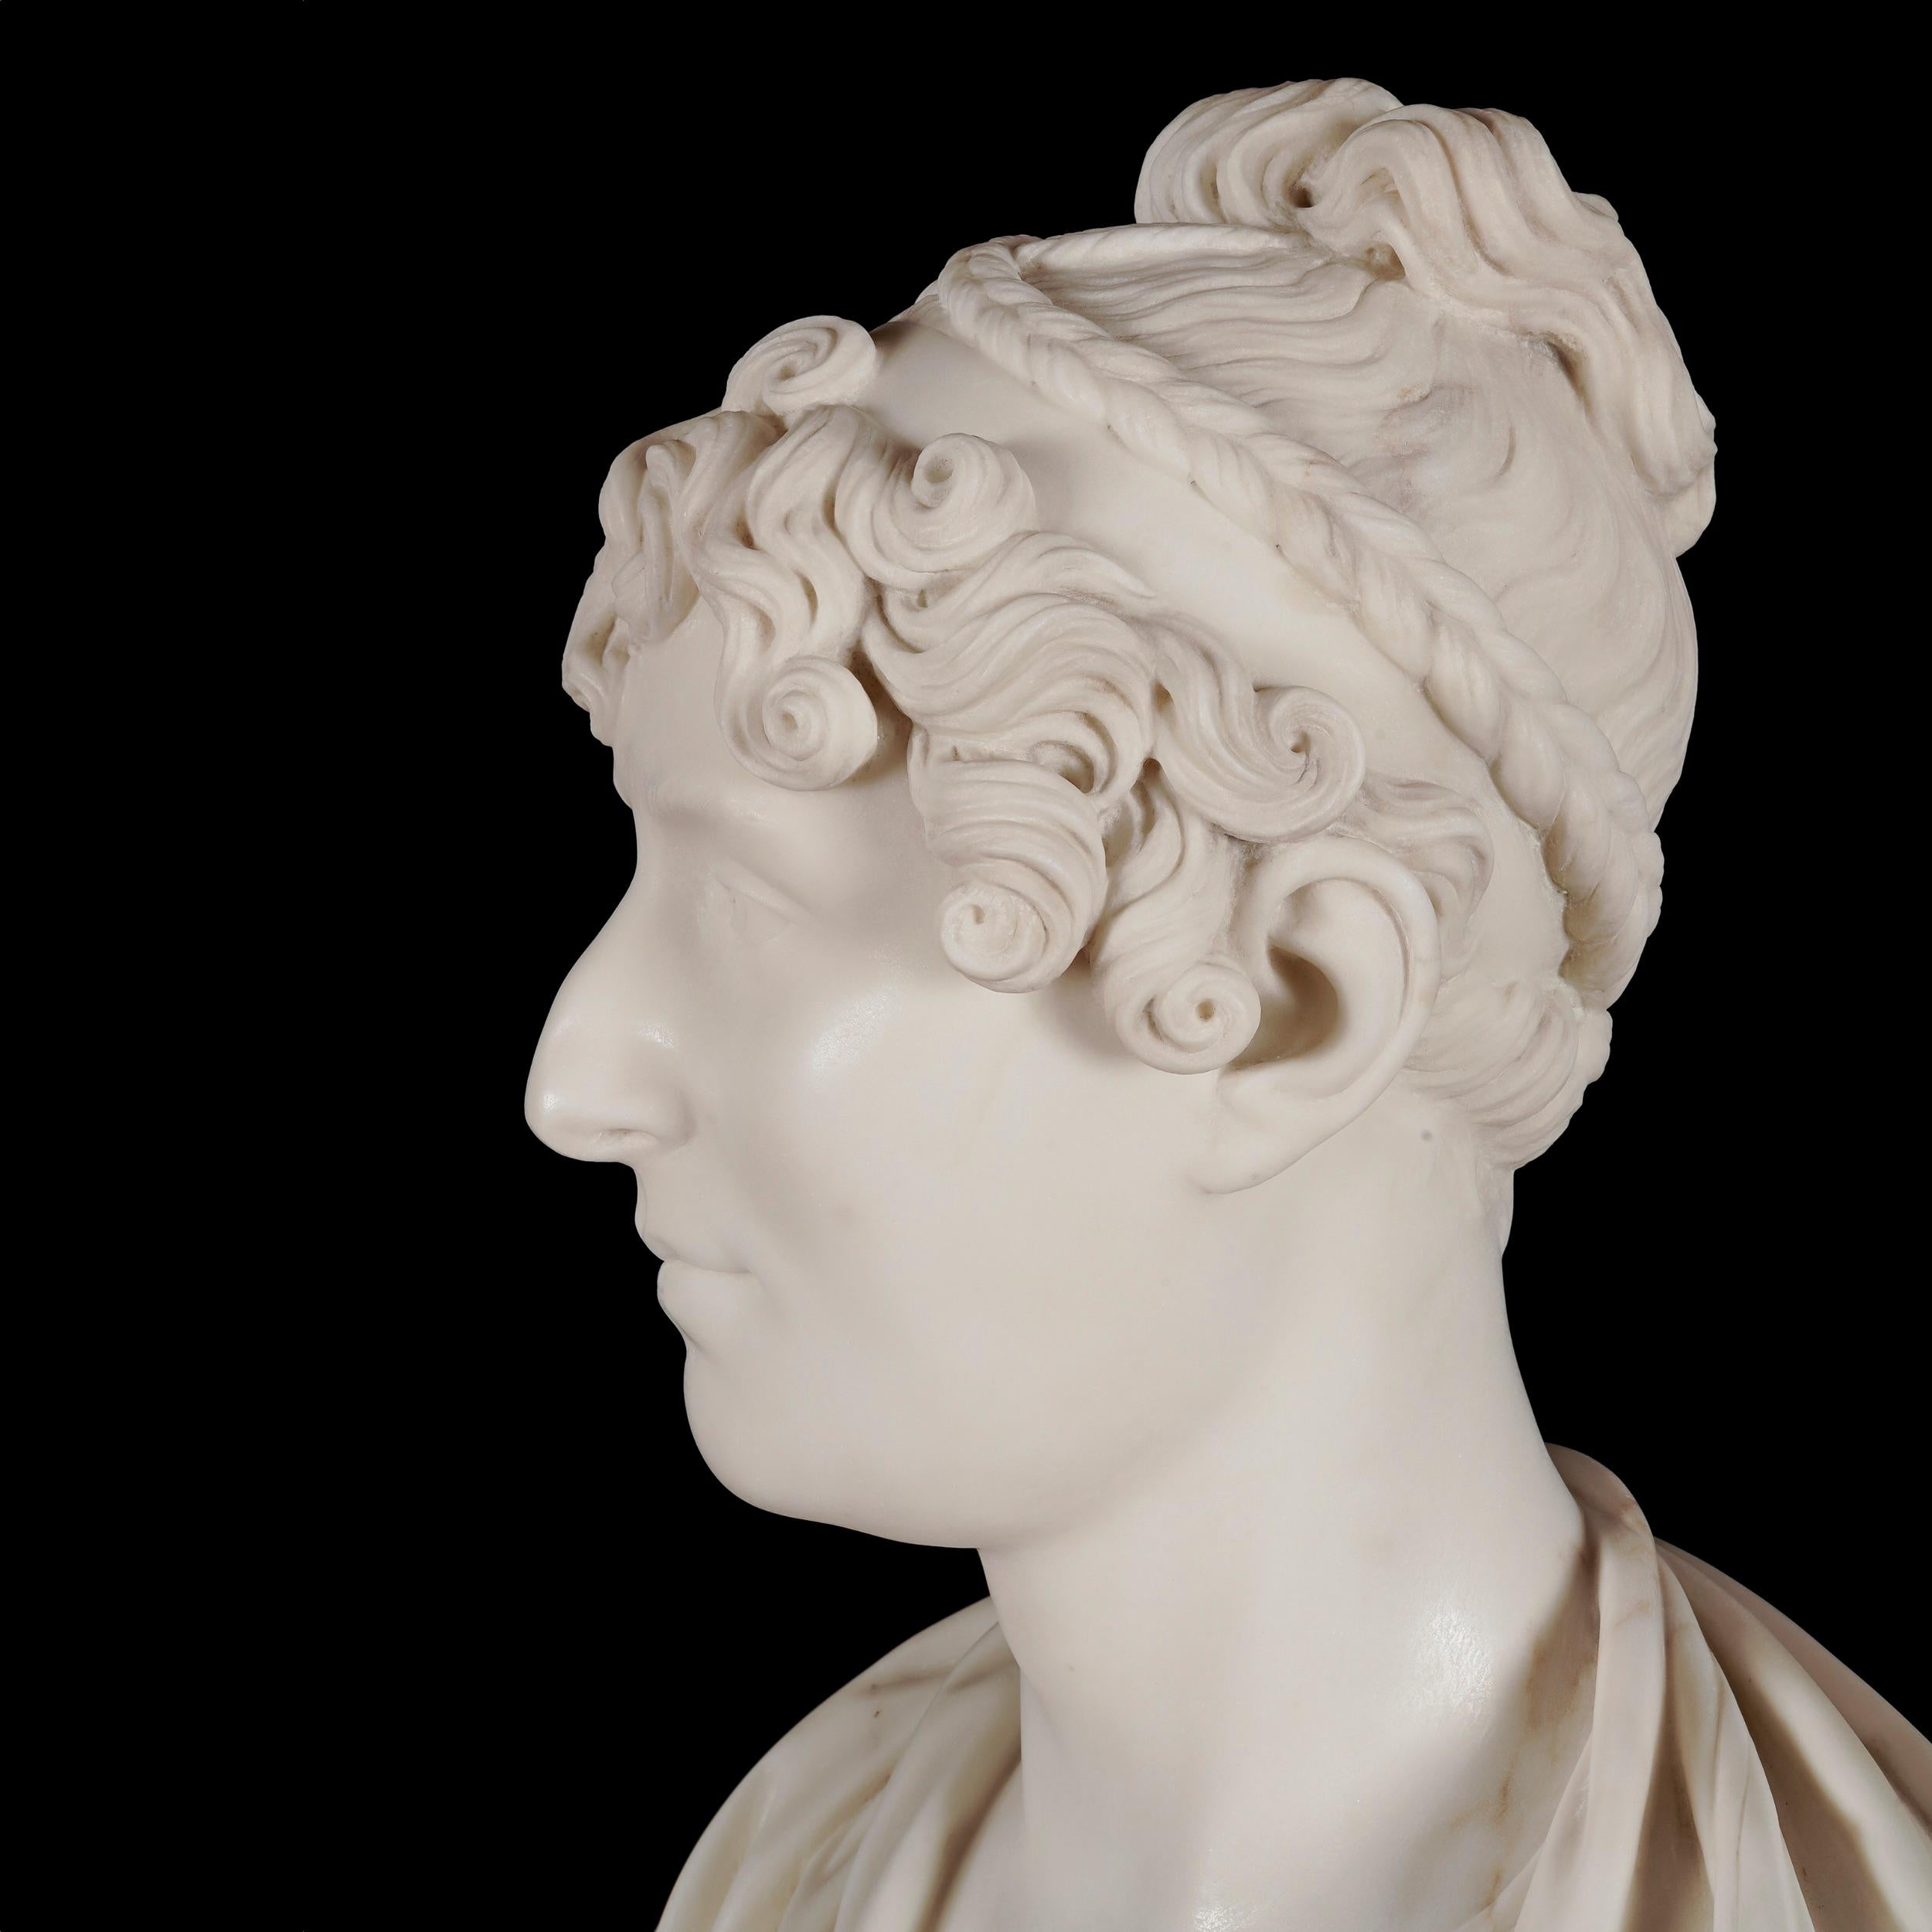 Neoklassizistische Porträtbüste
Von Lewis Alexander Goblet (1764-c.1823)

Möglicherweise 1821 in der Royal Academy ausgestellt

Aus Carrara-Marmor geschnitzt, steht die Büste auf einem taillierten Rundsockel; sie stellt eine Dame dar, die nach